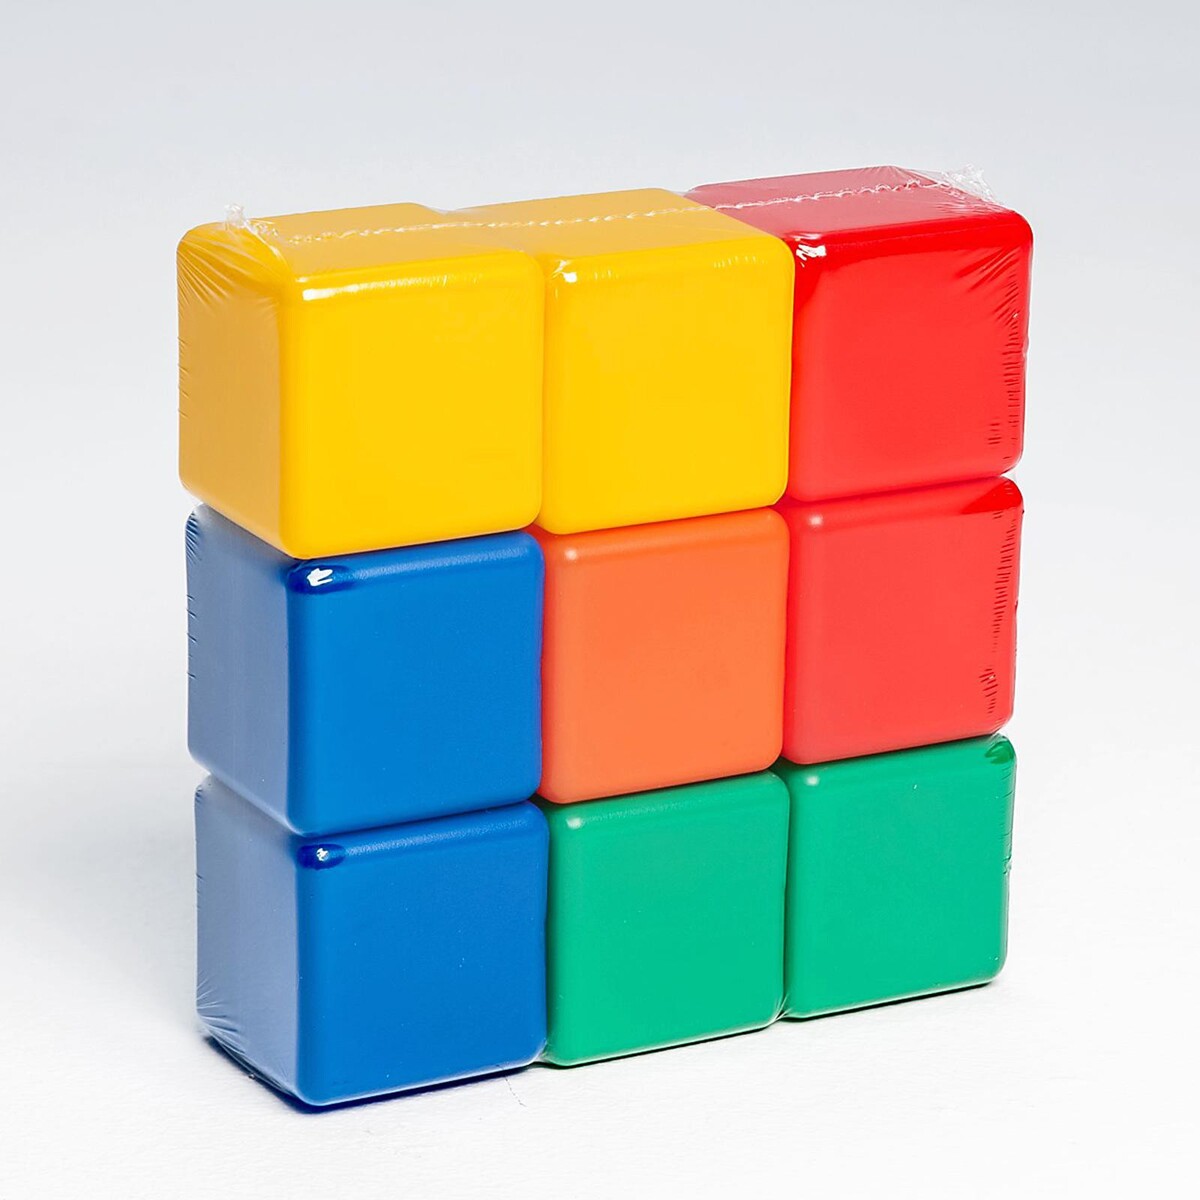 Купить куб 9. Кубики пластмассовые. Кубик пластиковый. Кубики детские пластмассовые. Кубики цветные пластмассовые.